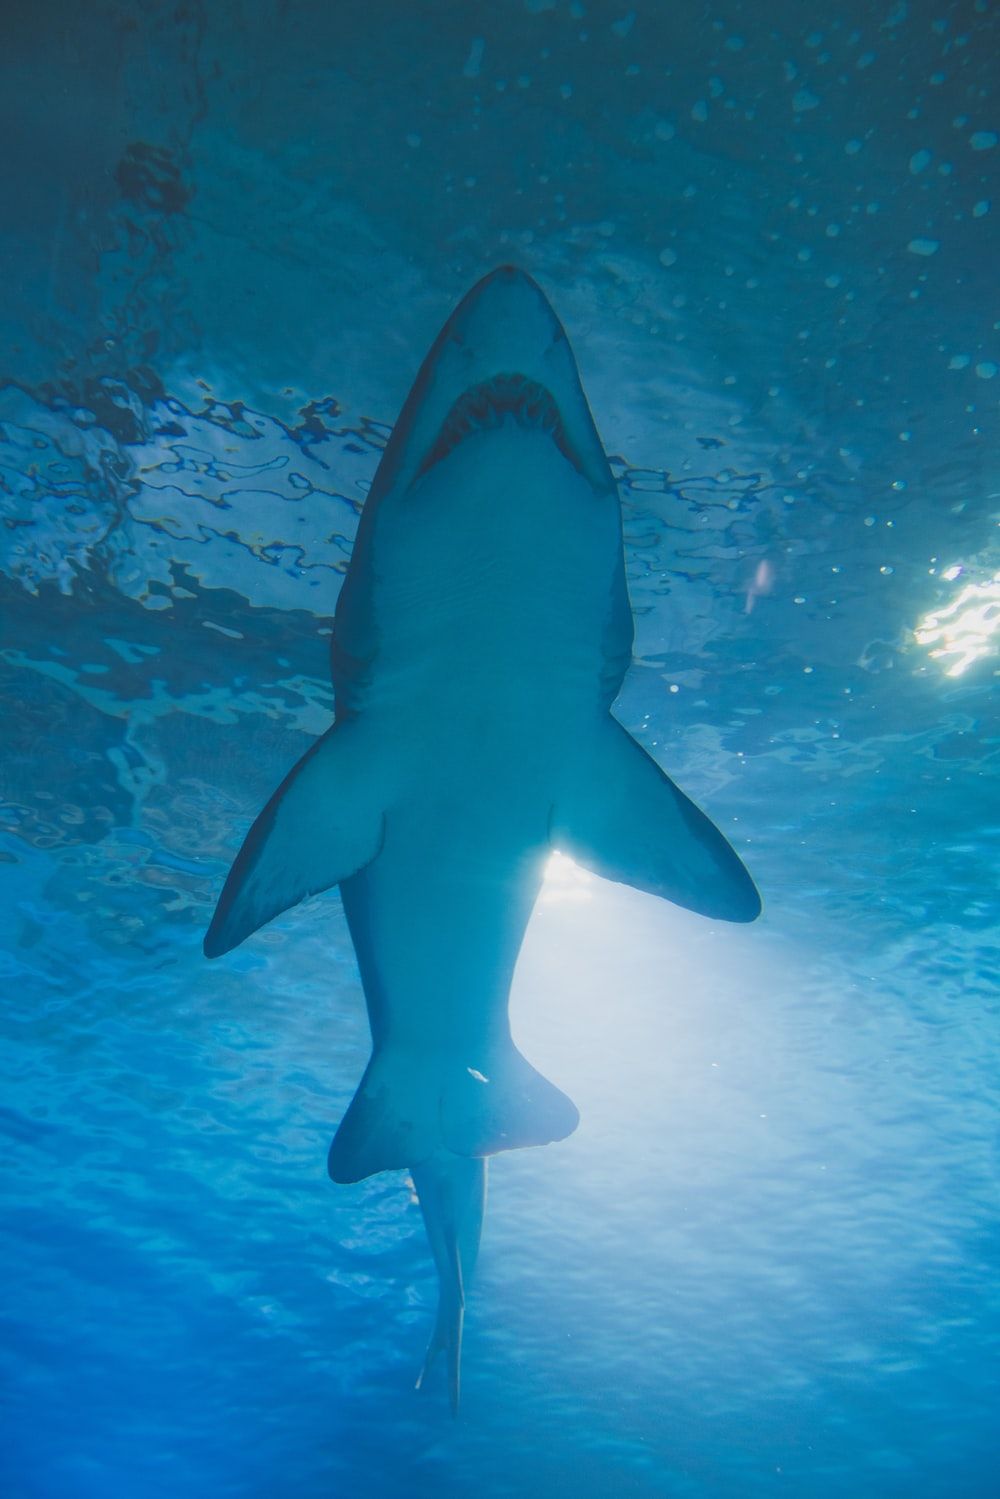 Más de 500 imágenes de tiburones | Descargar imágenes gratis